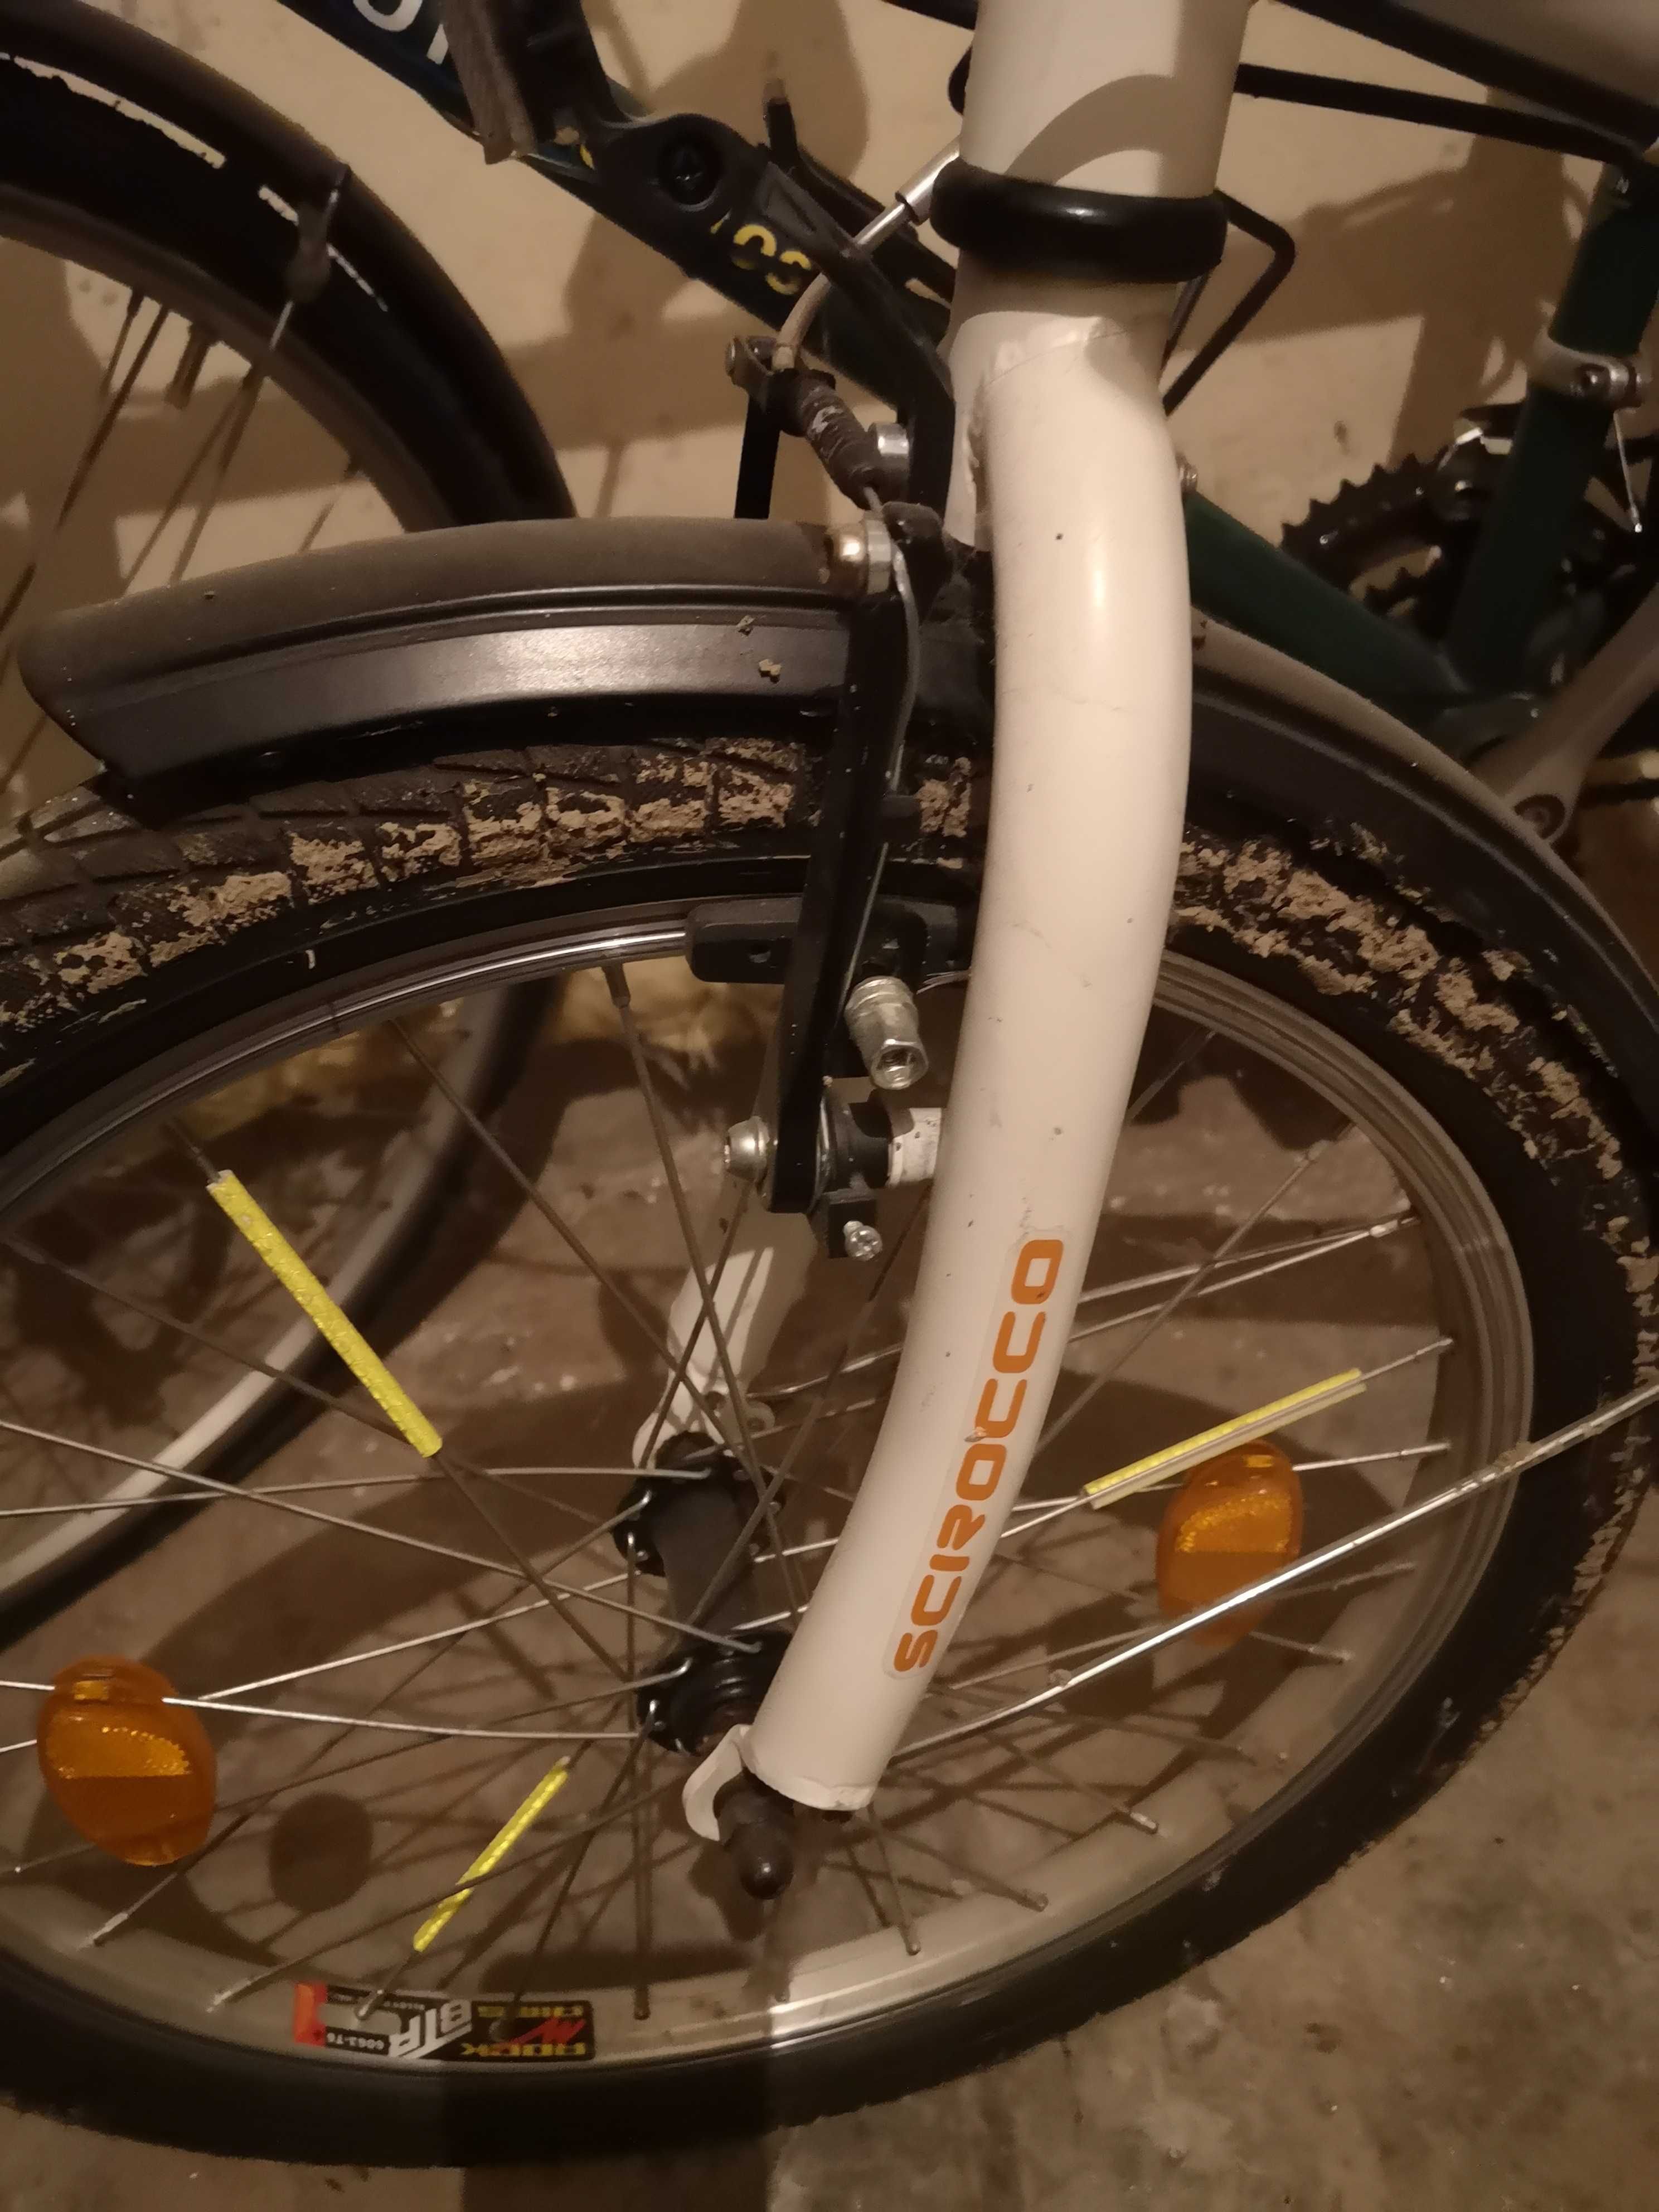 Bicicleta Sciroco